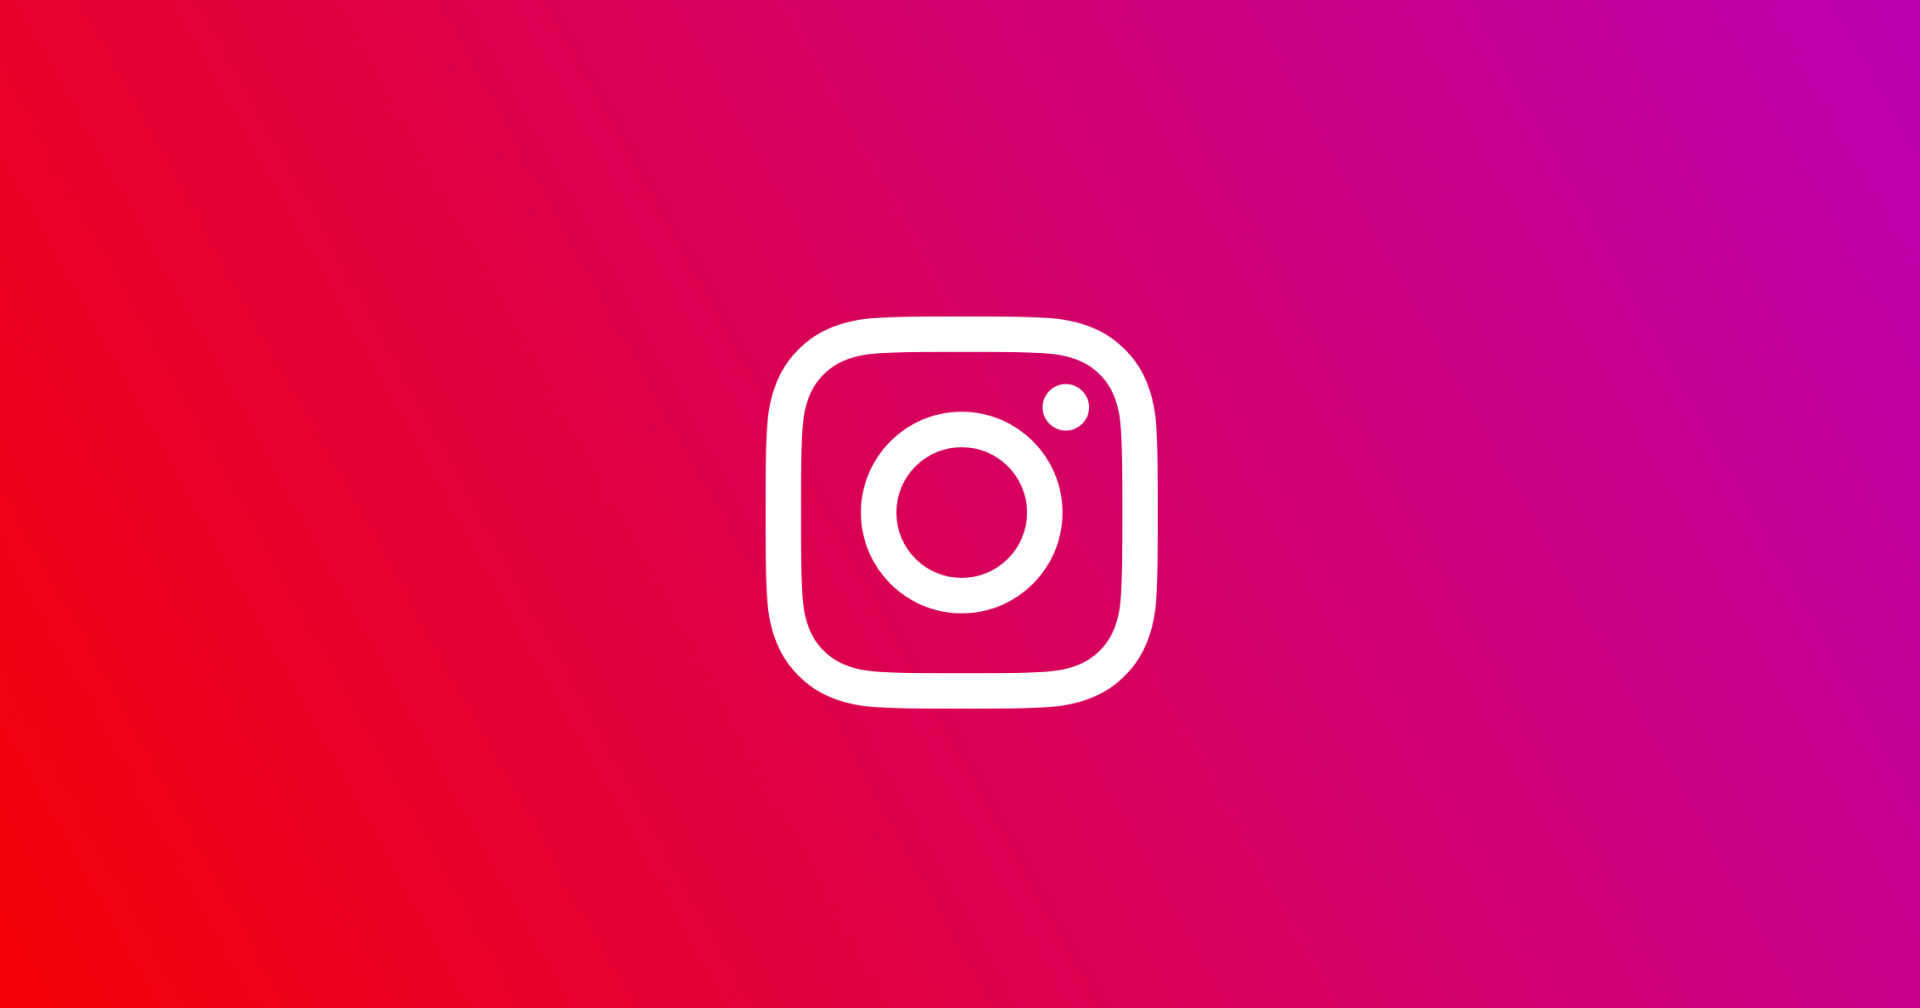 Instagram เริ่มทดสอบระบบ Subscription จ่ายเงินเพื่อเข้าถึงคอนเทนต์สุดเอกซ์คลูซีฟ